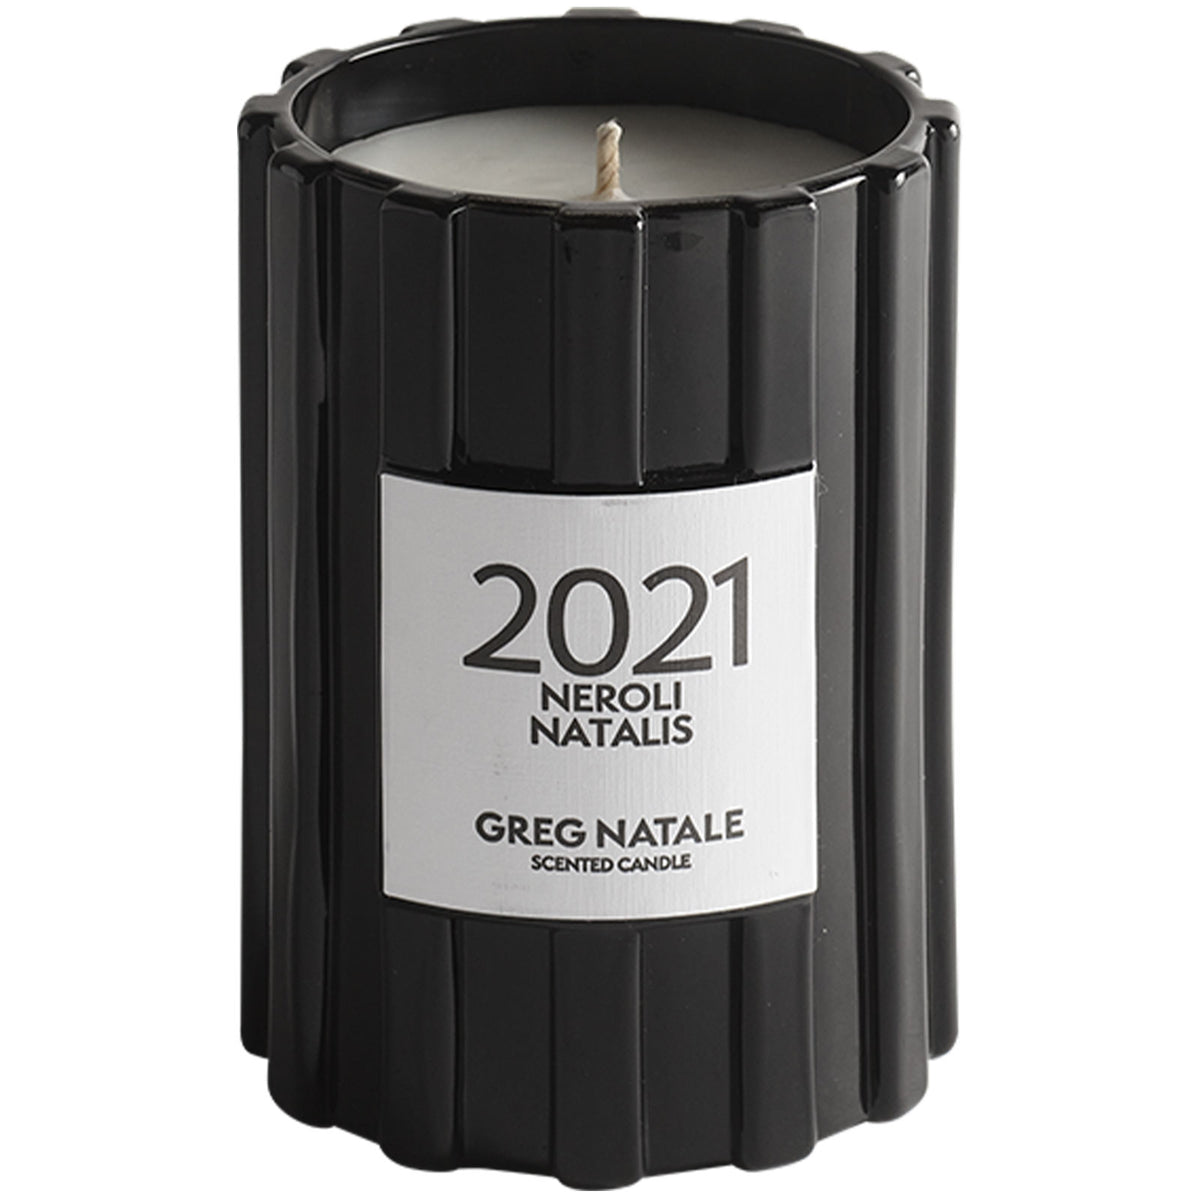 2021 Neroli Natalis Candle